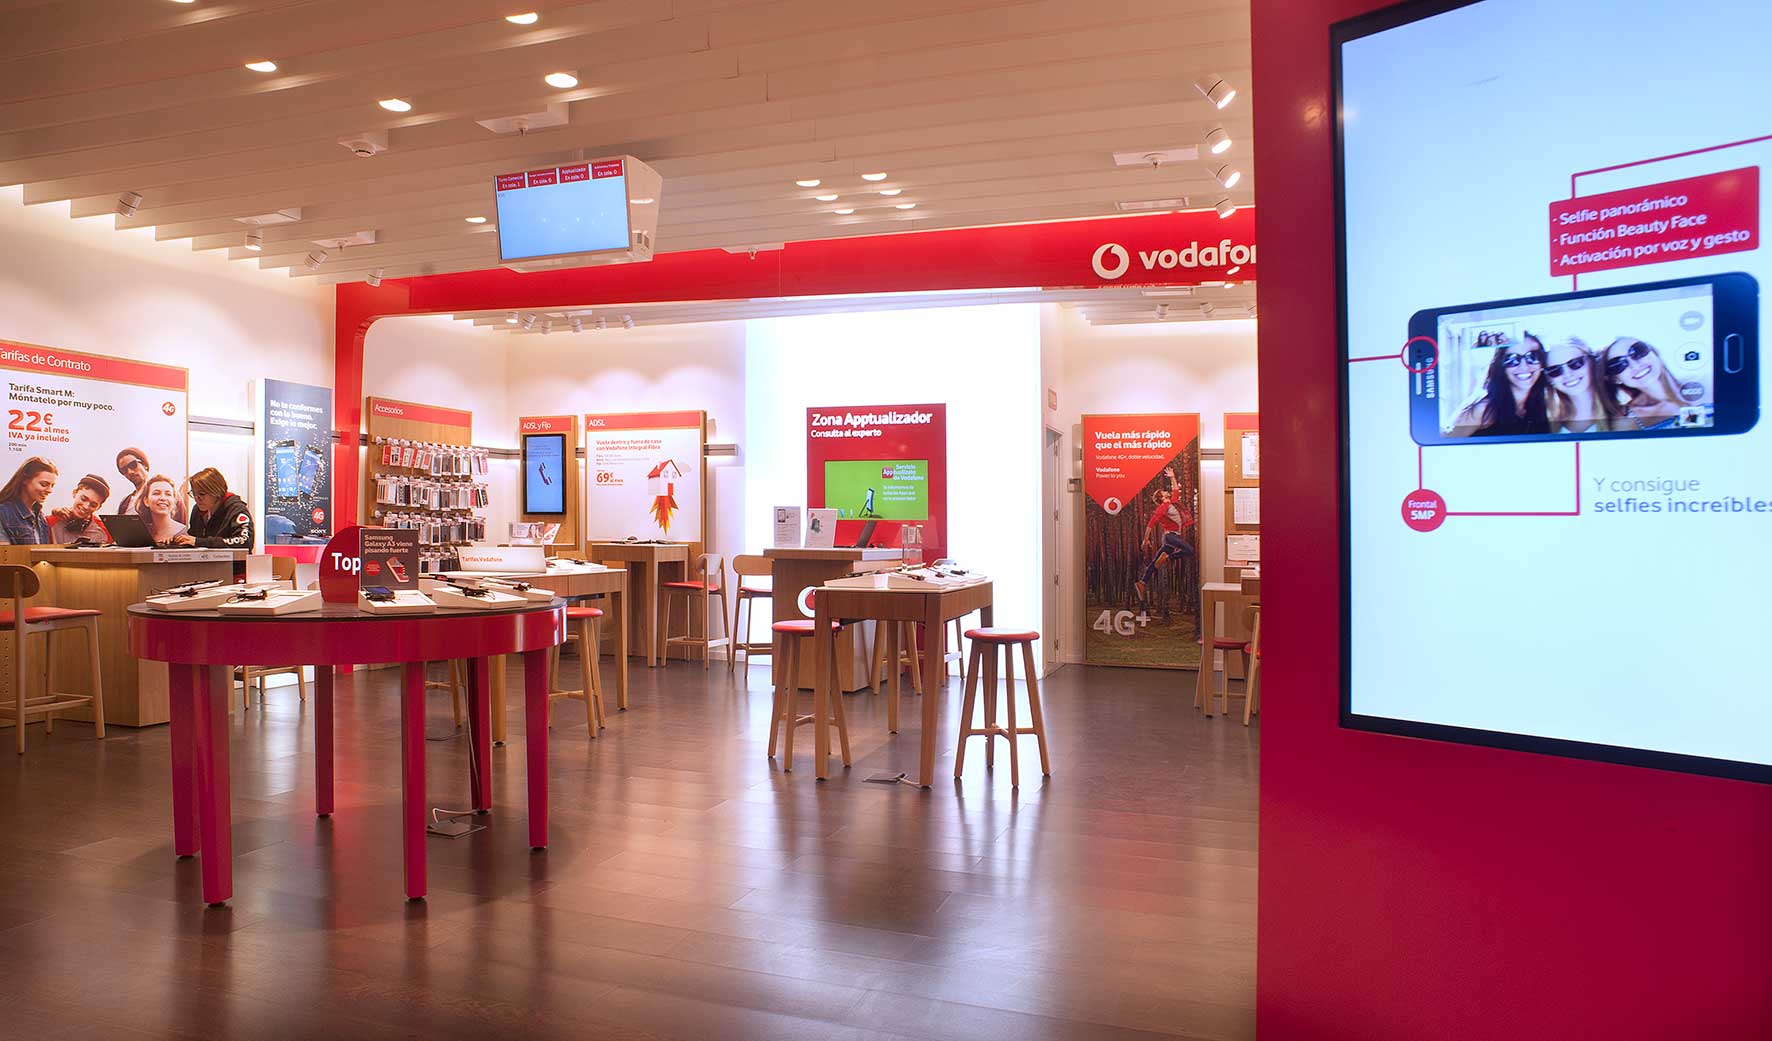 Decoración integral en el punto de venta para Vodafone